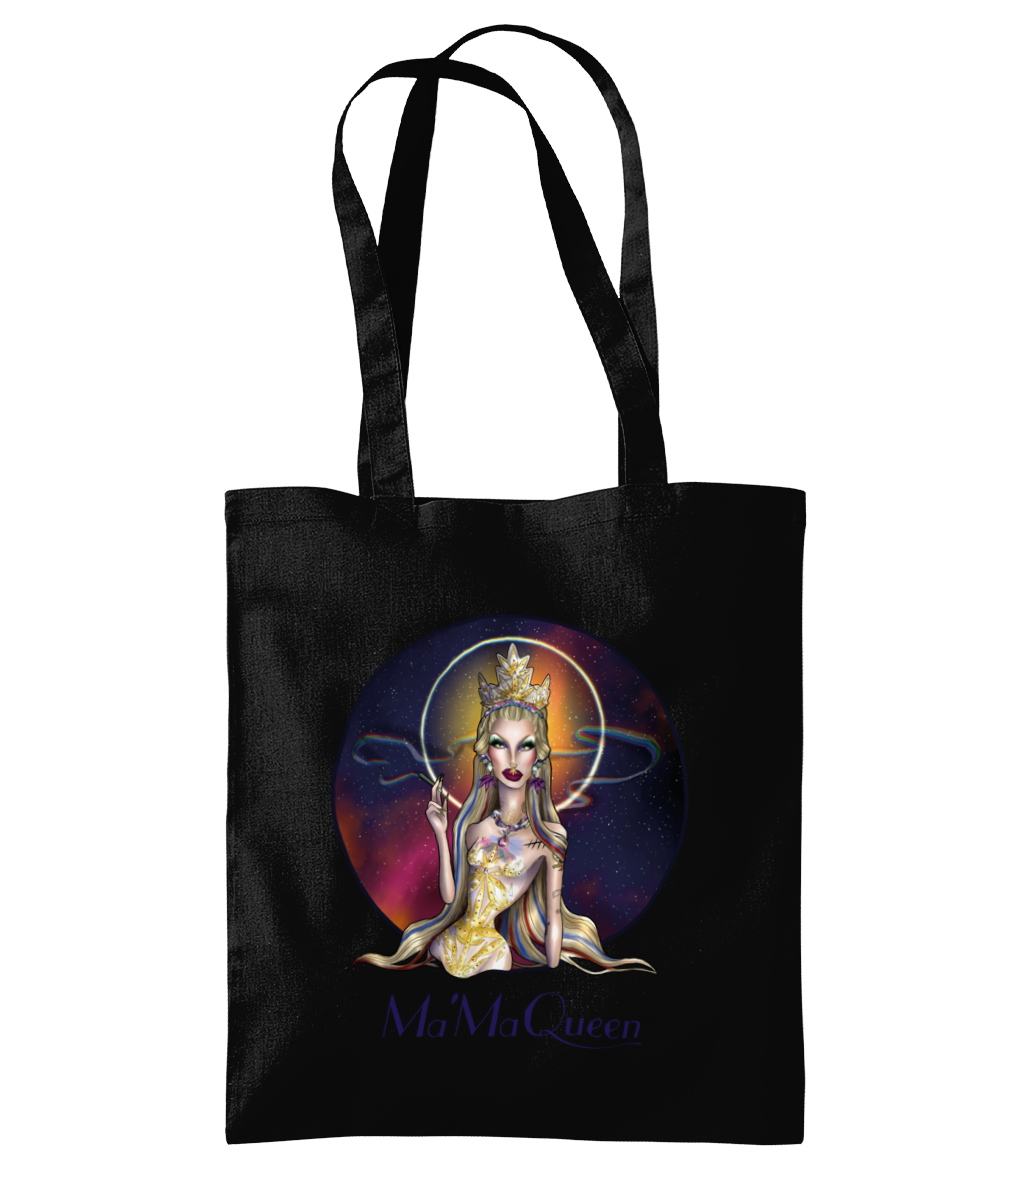 Ma'Ma Queen - Tote Bag